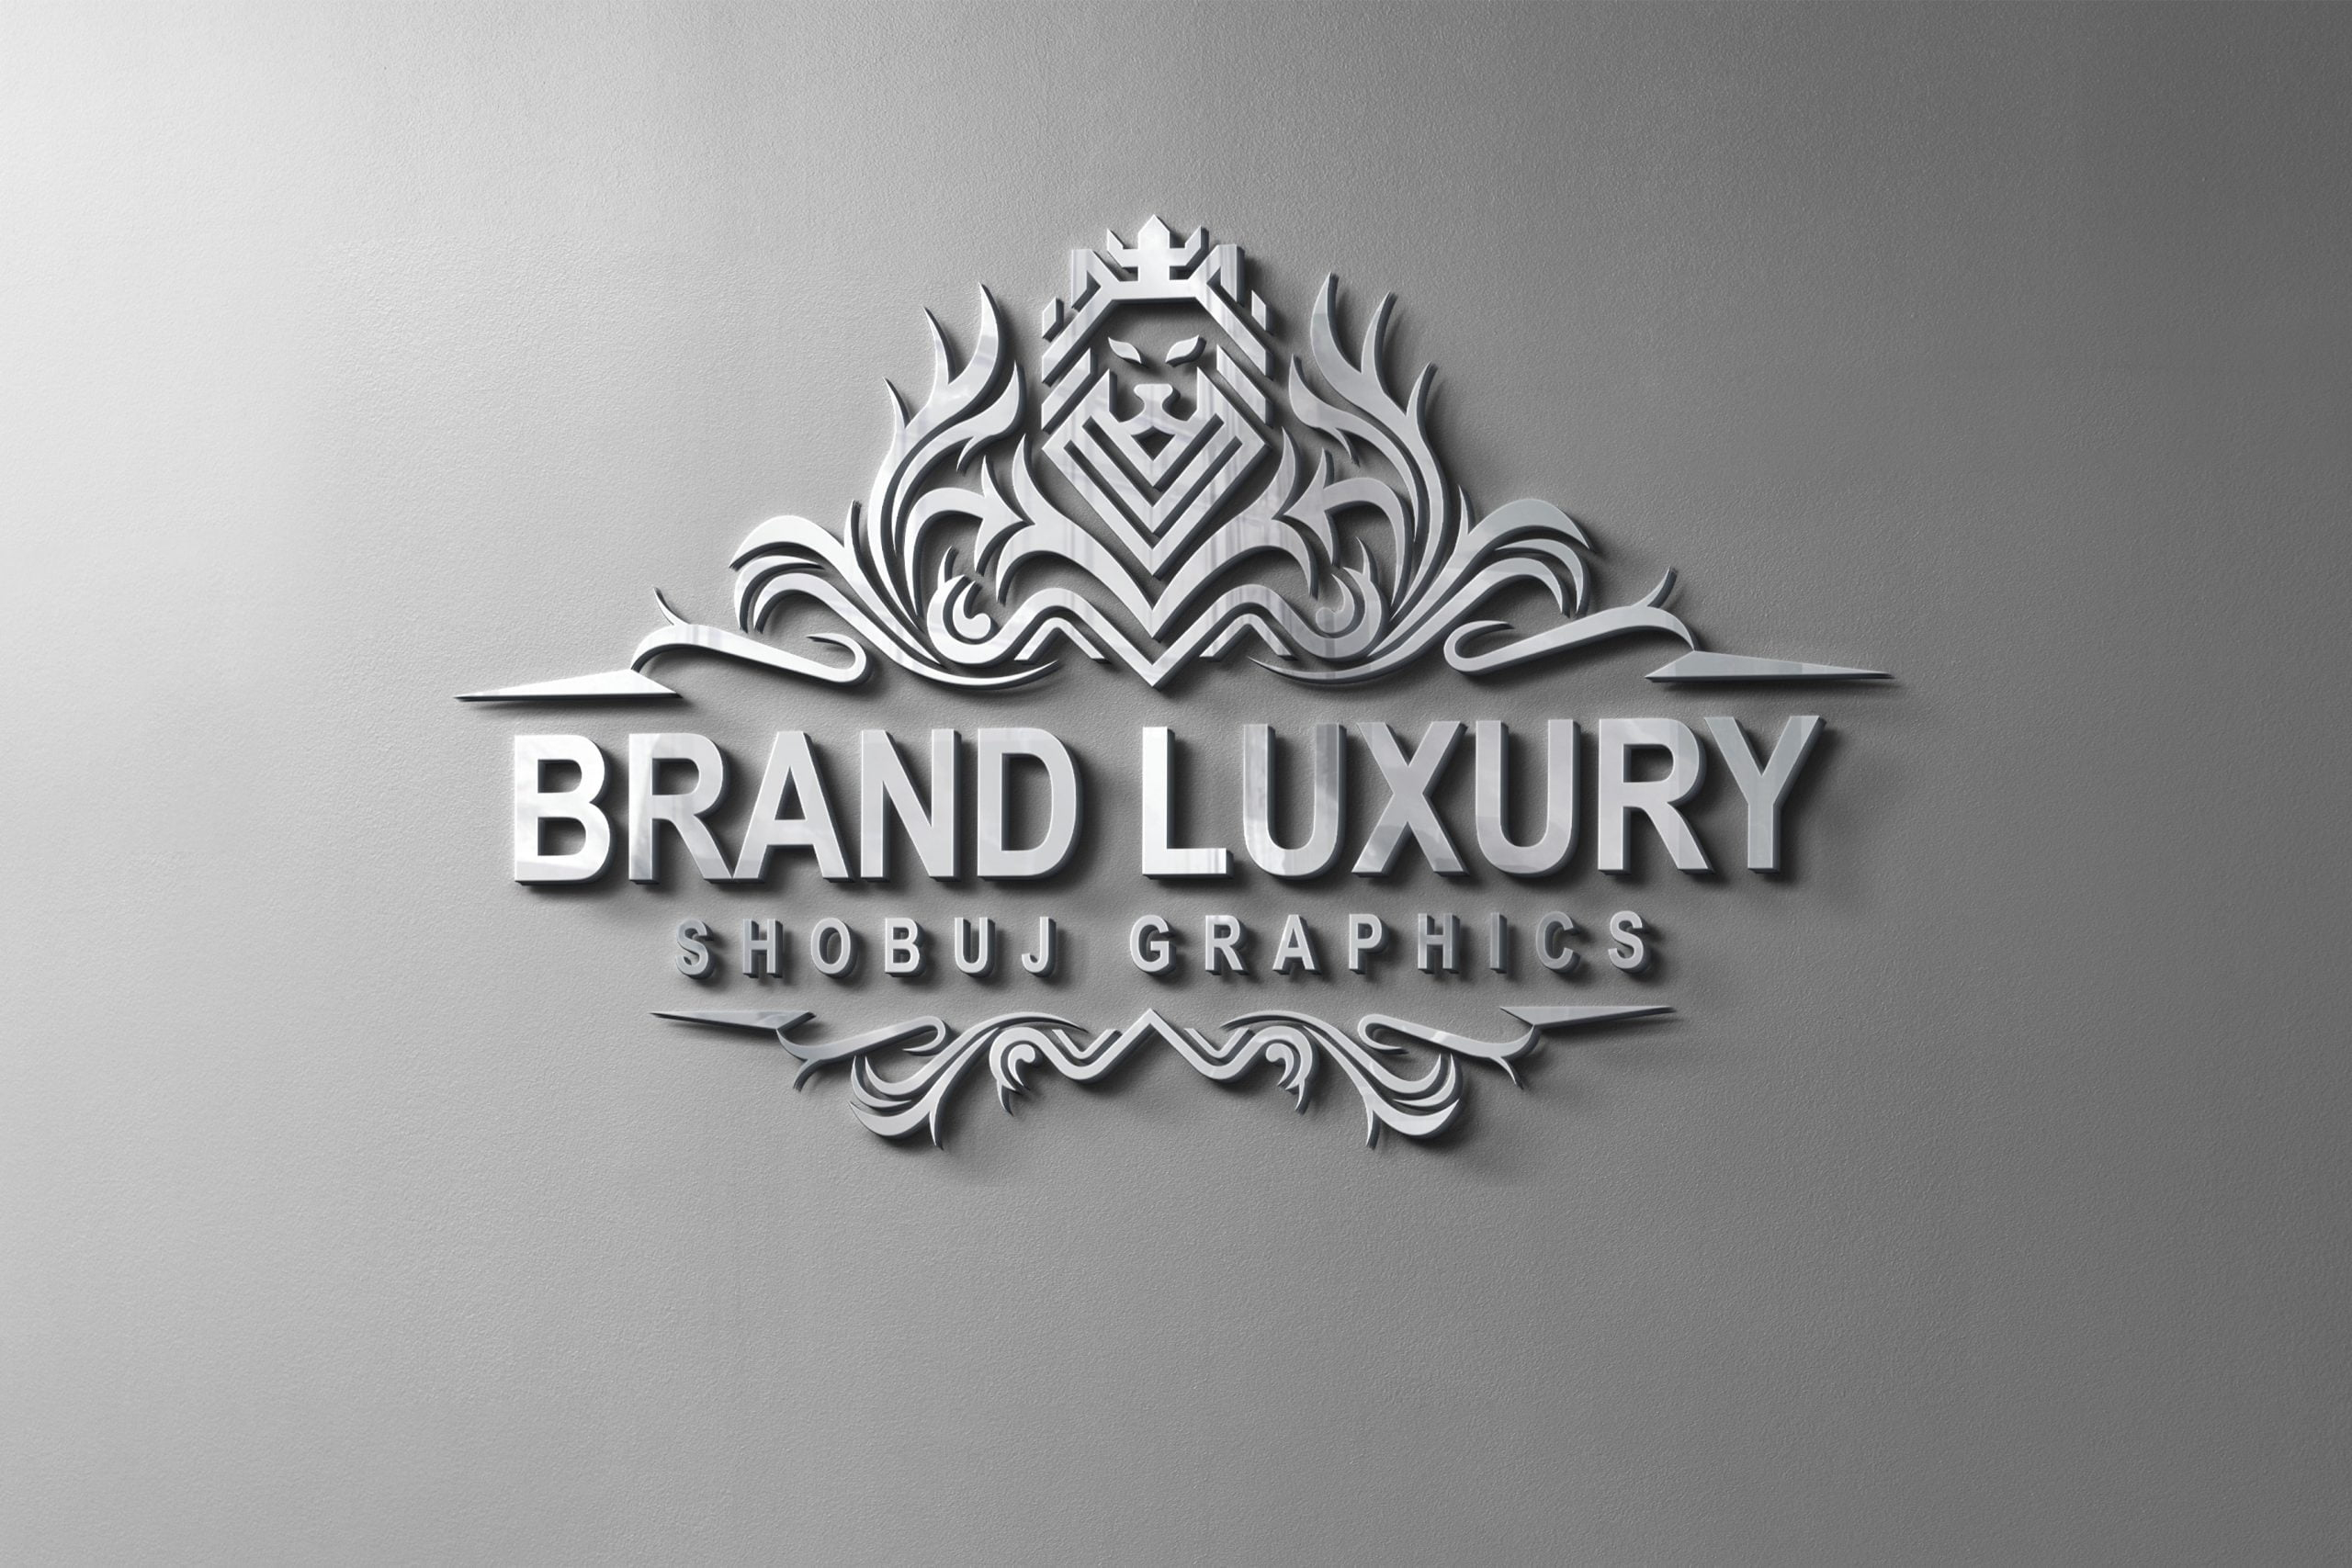 Luxury Brand Logo Design - Graphicsfamily à Logo Marque De Luxe intéressant 